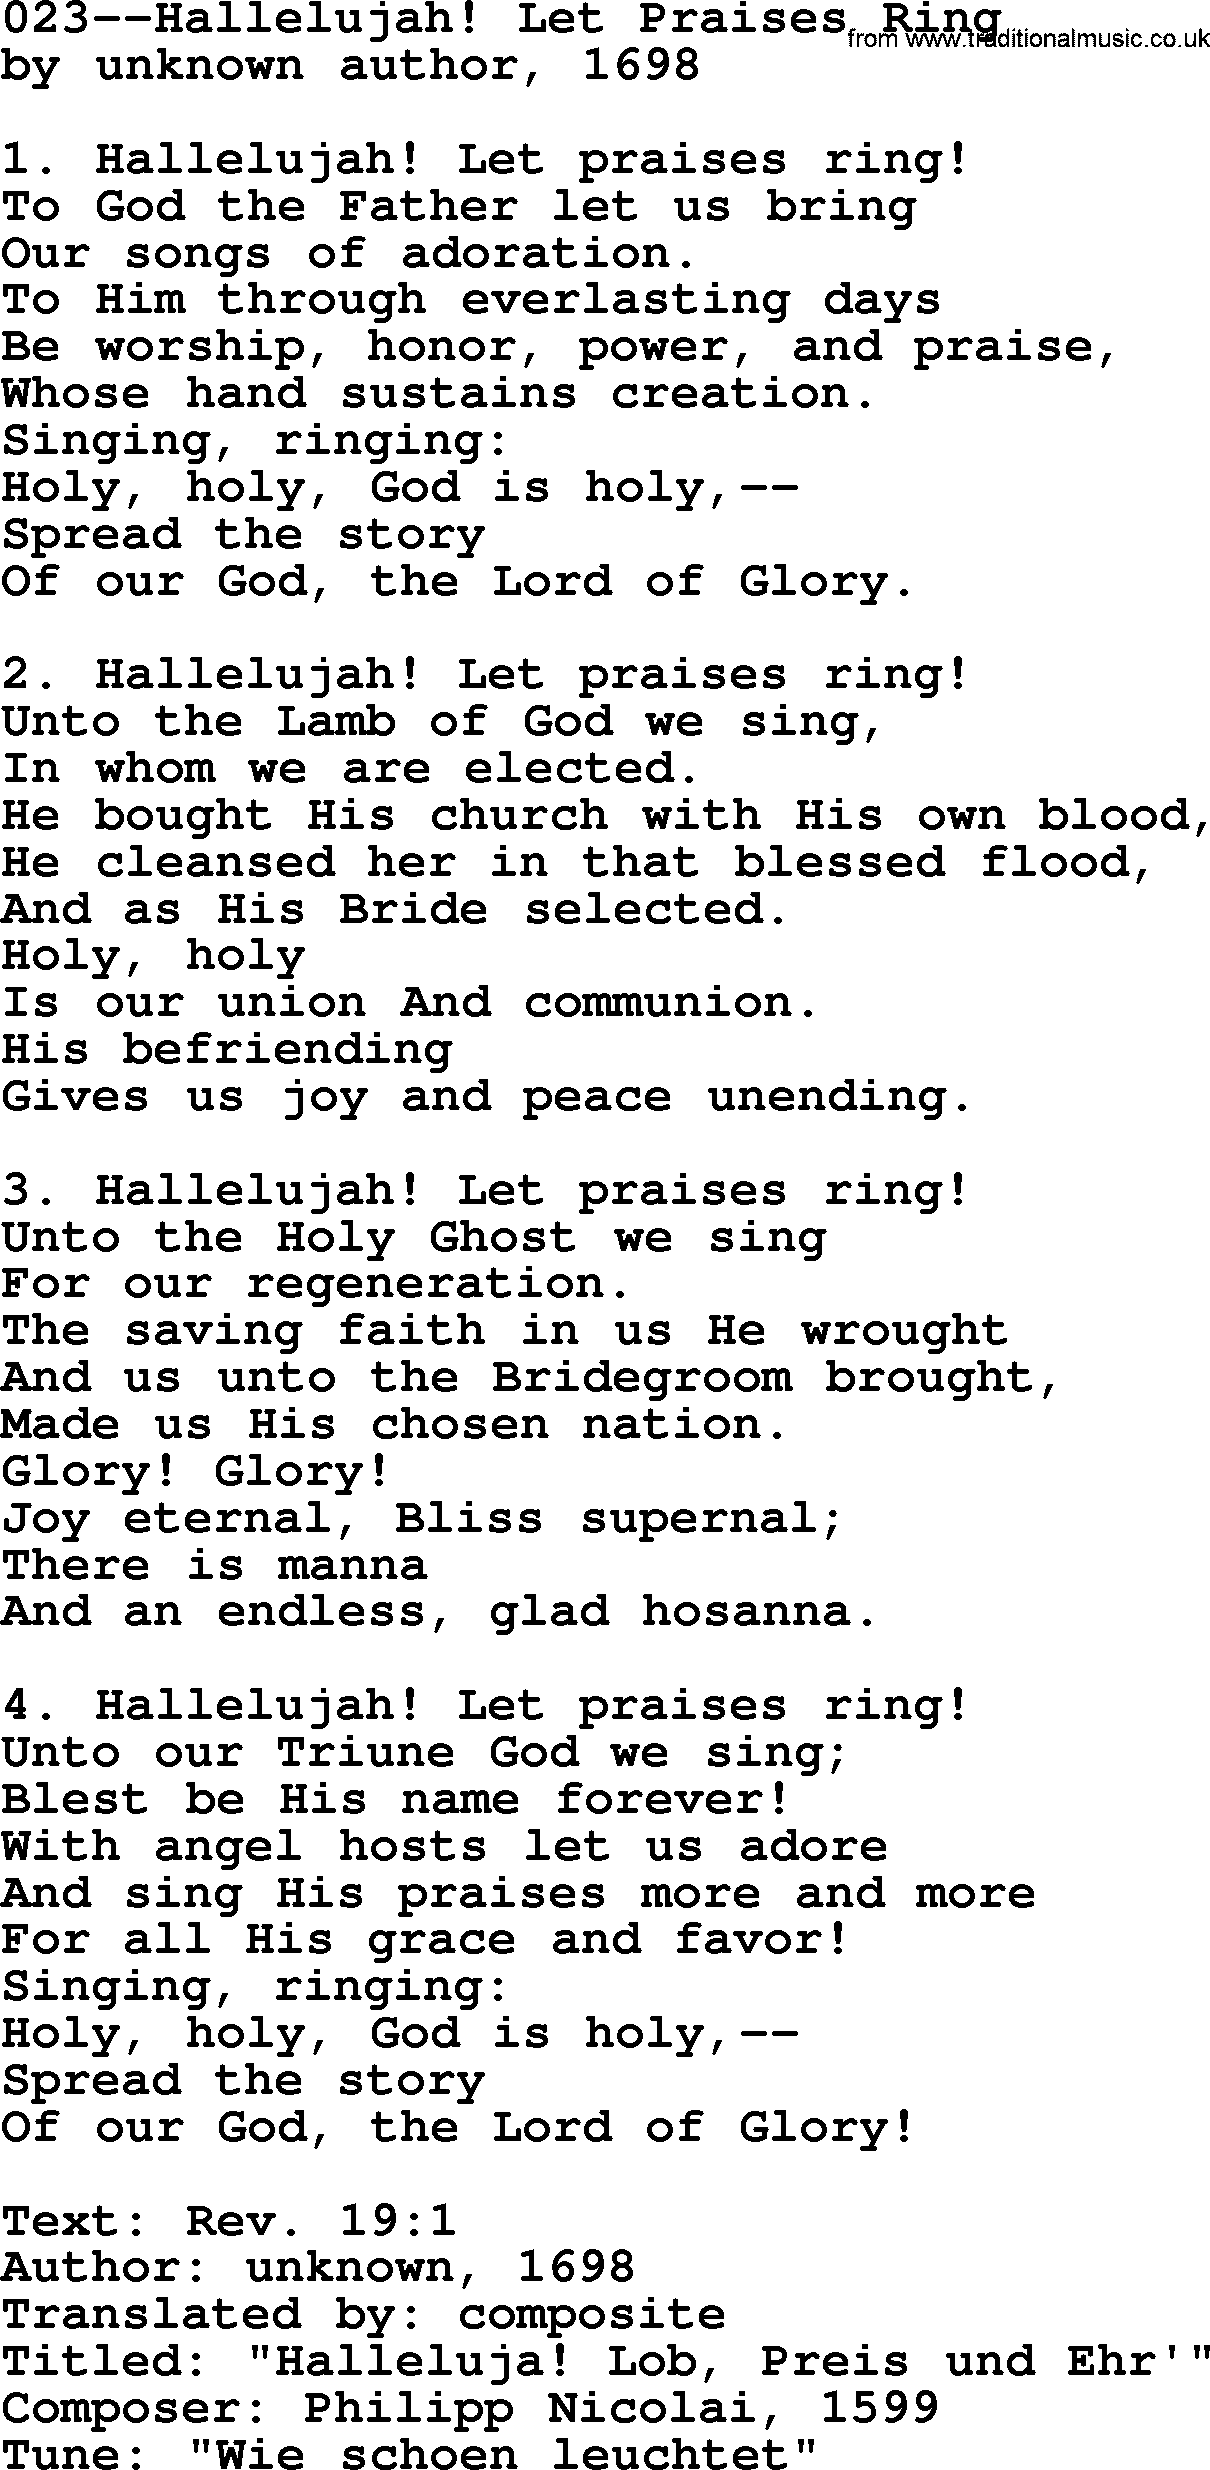 Lutheran Hymn: 023--Hallelujah! Let Praises Ring.txt lyrics with PDF